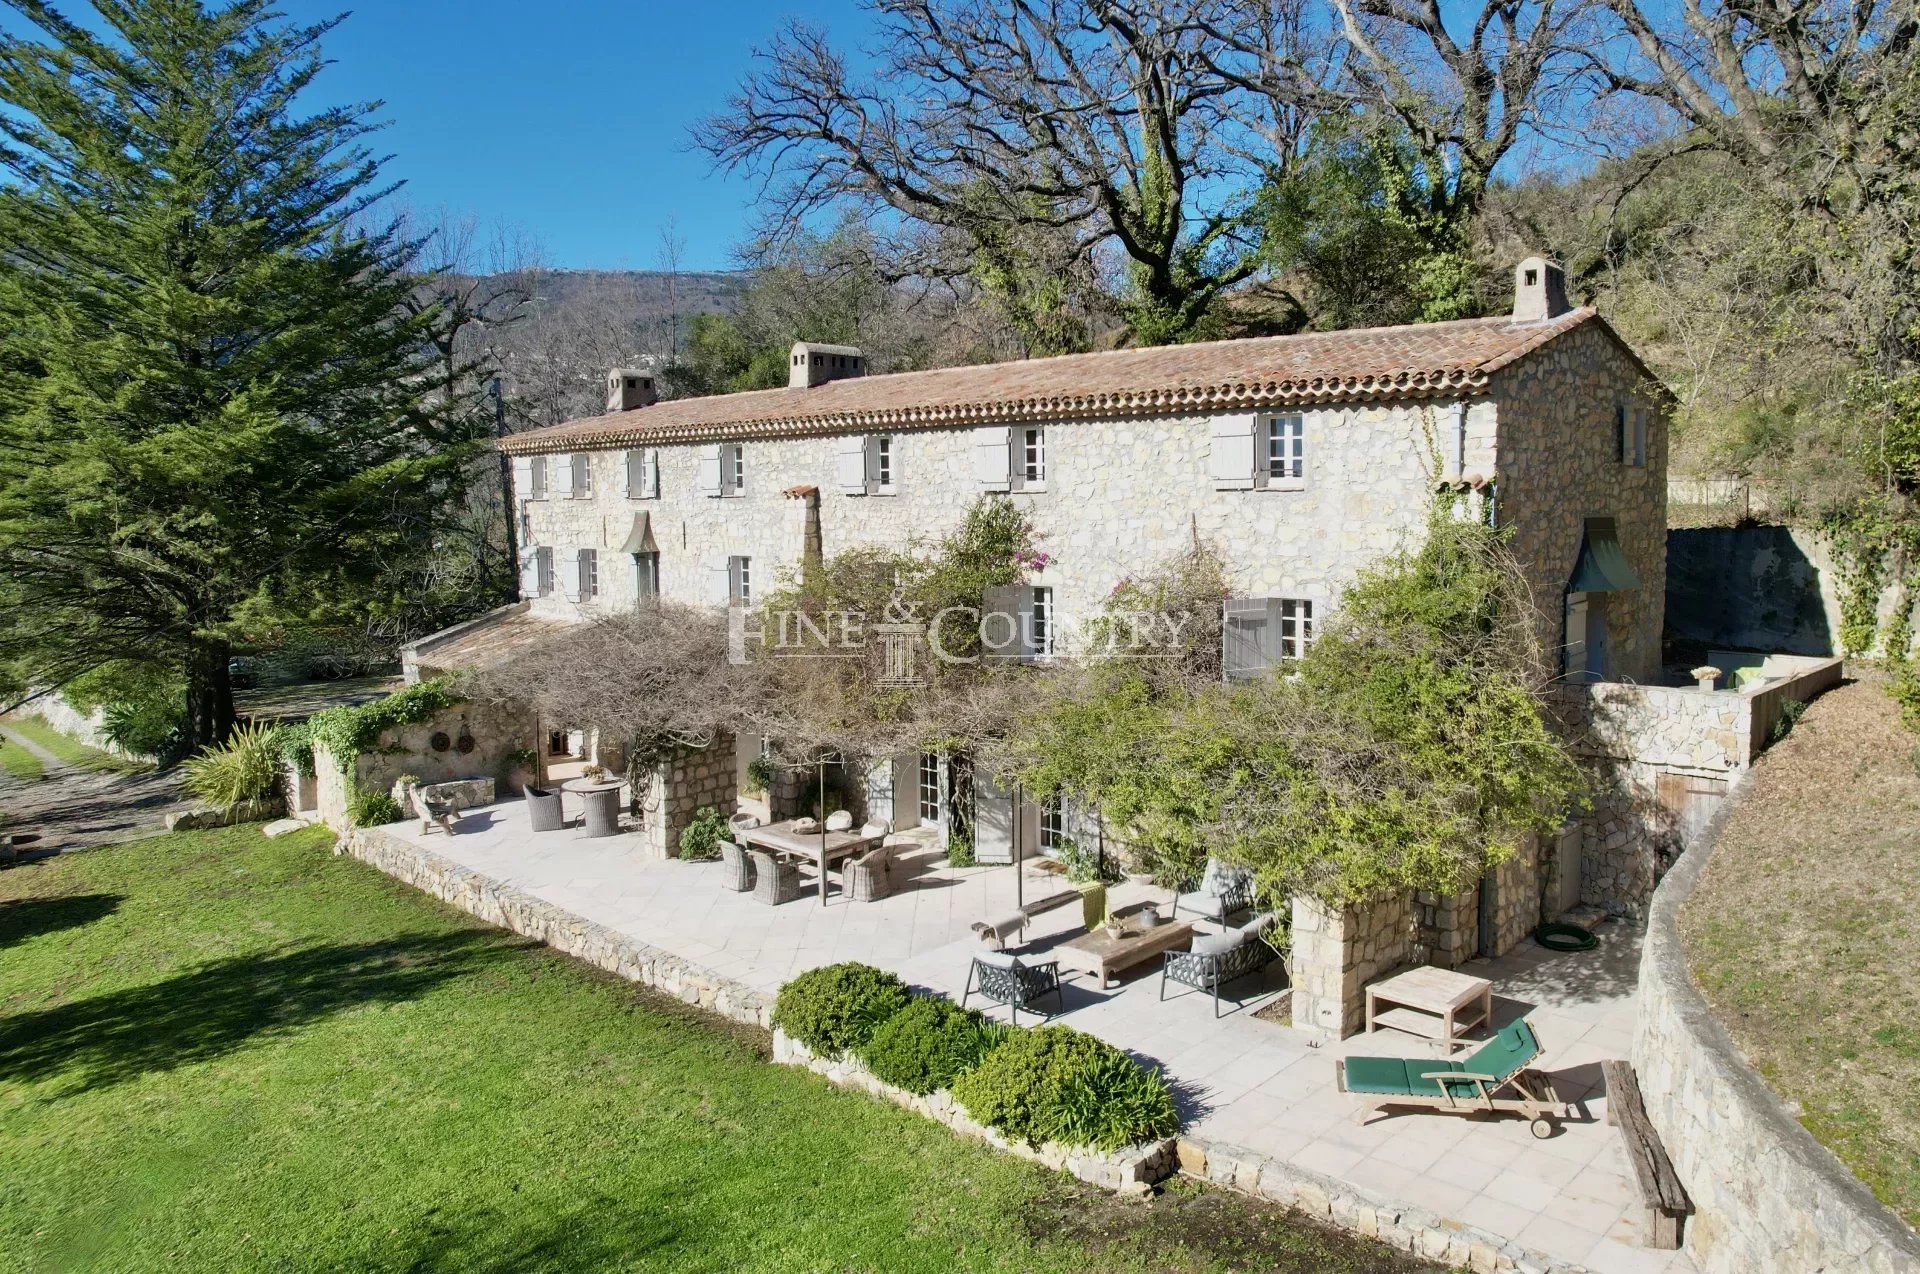 Villa in Chateauneuf de Grasse, Cote d'Azur, France